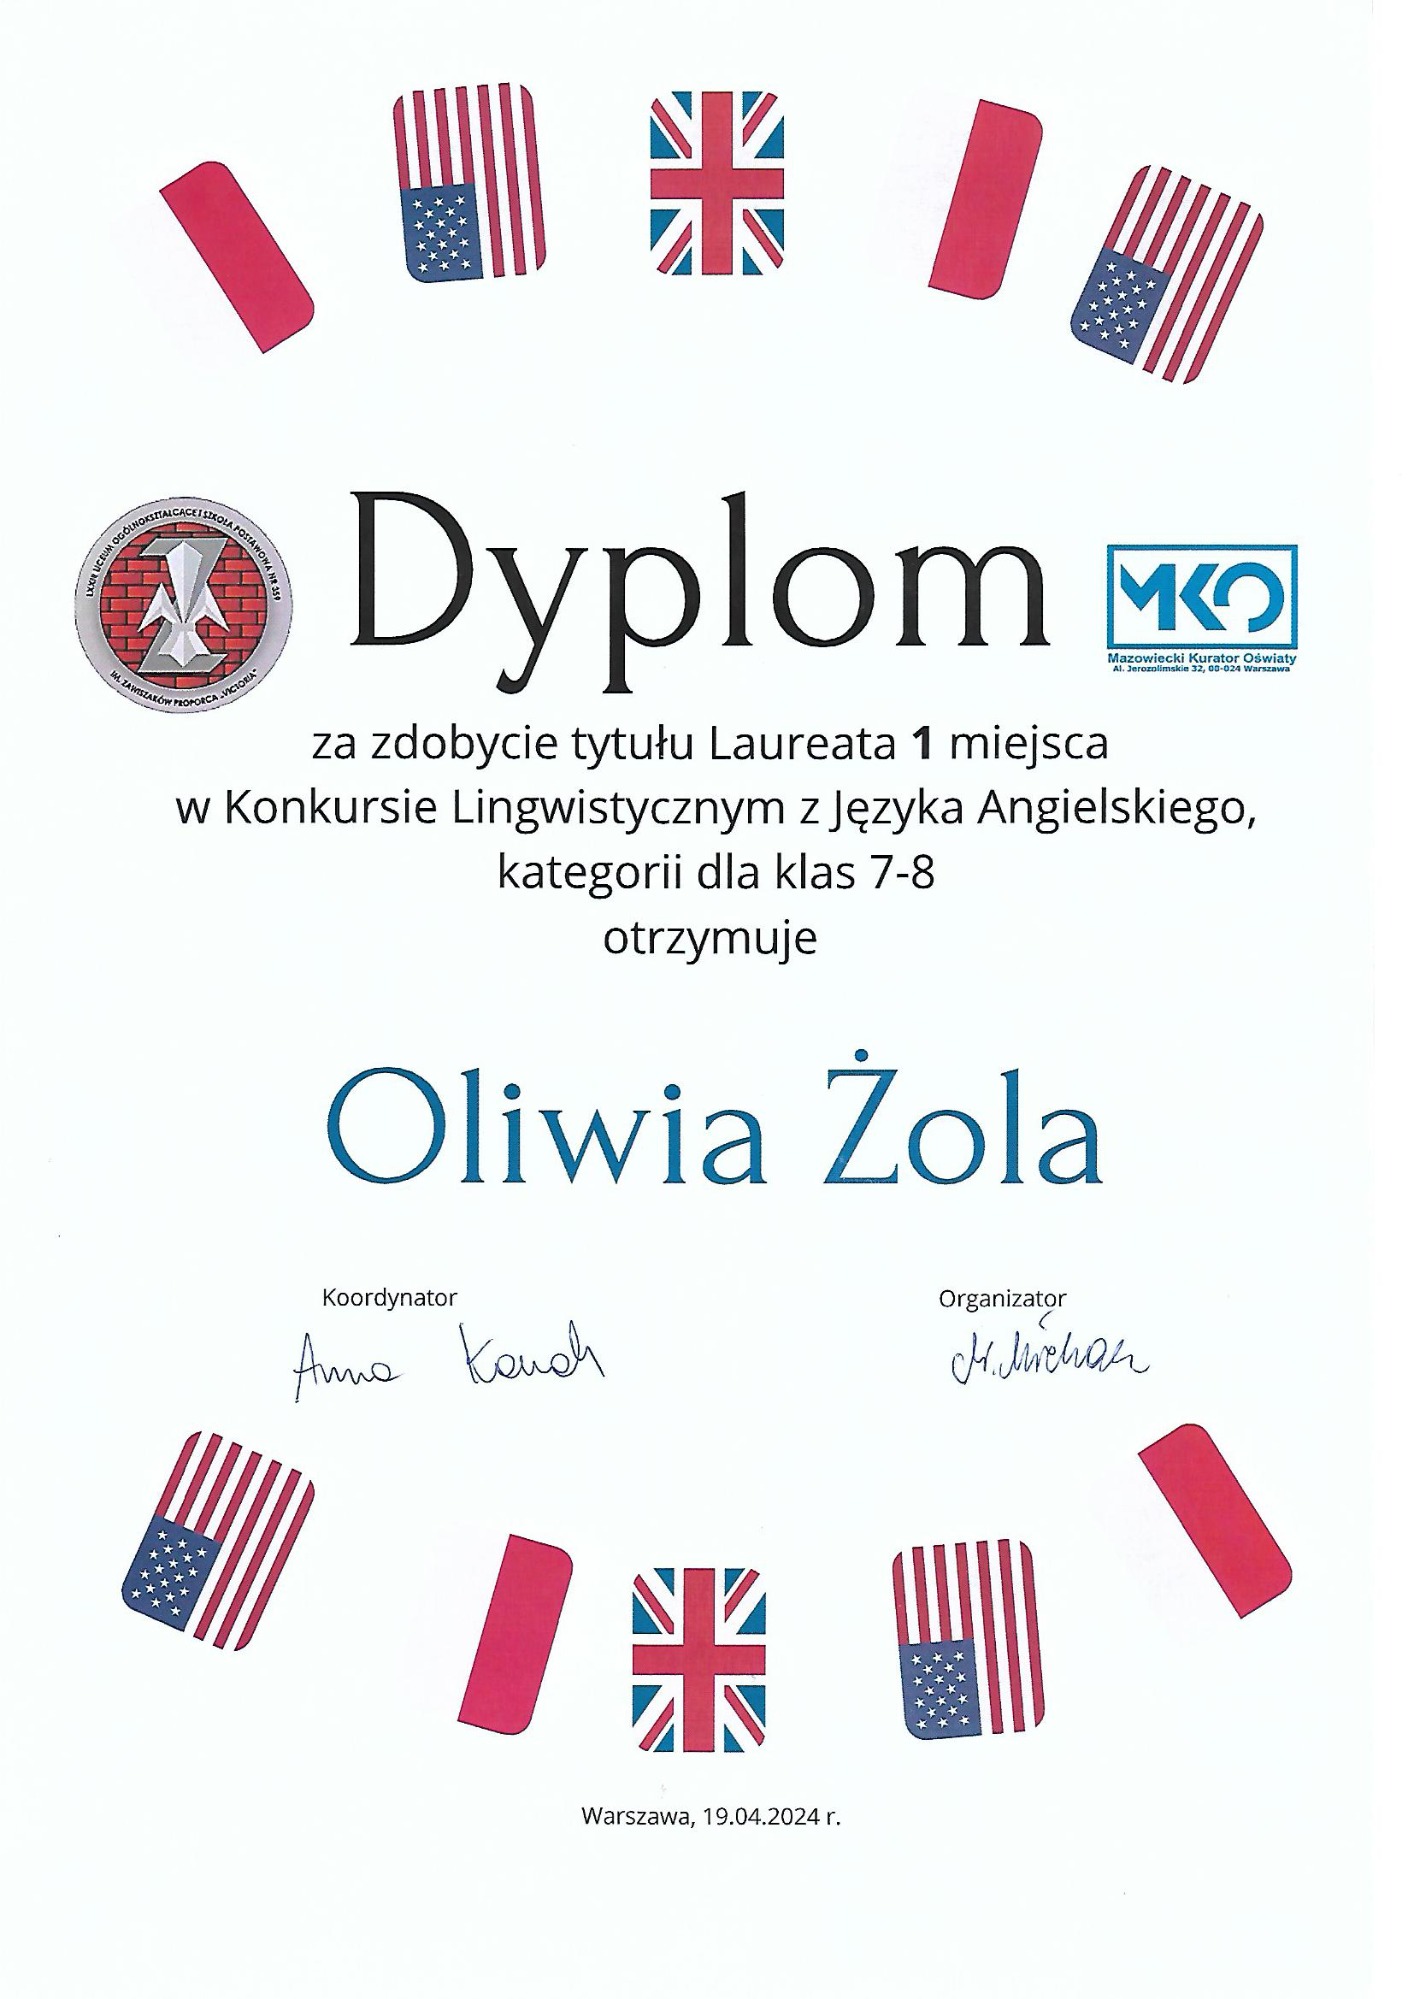 Dyplom dla Oliwii Żoli za zdobycie tytułu laureata pierwszego miejsca w konkursie lingwistycznym z jęzuka angielskiego.